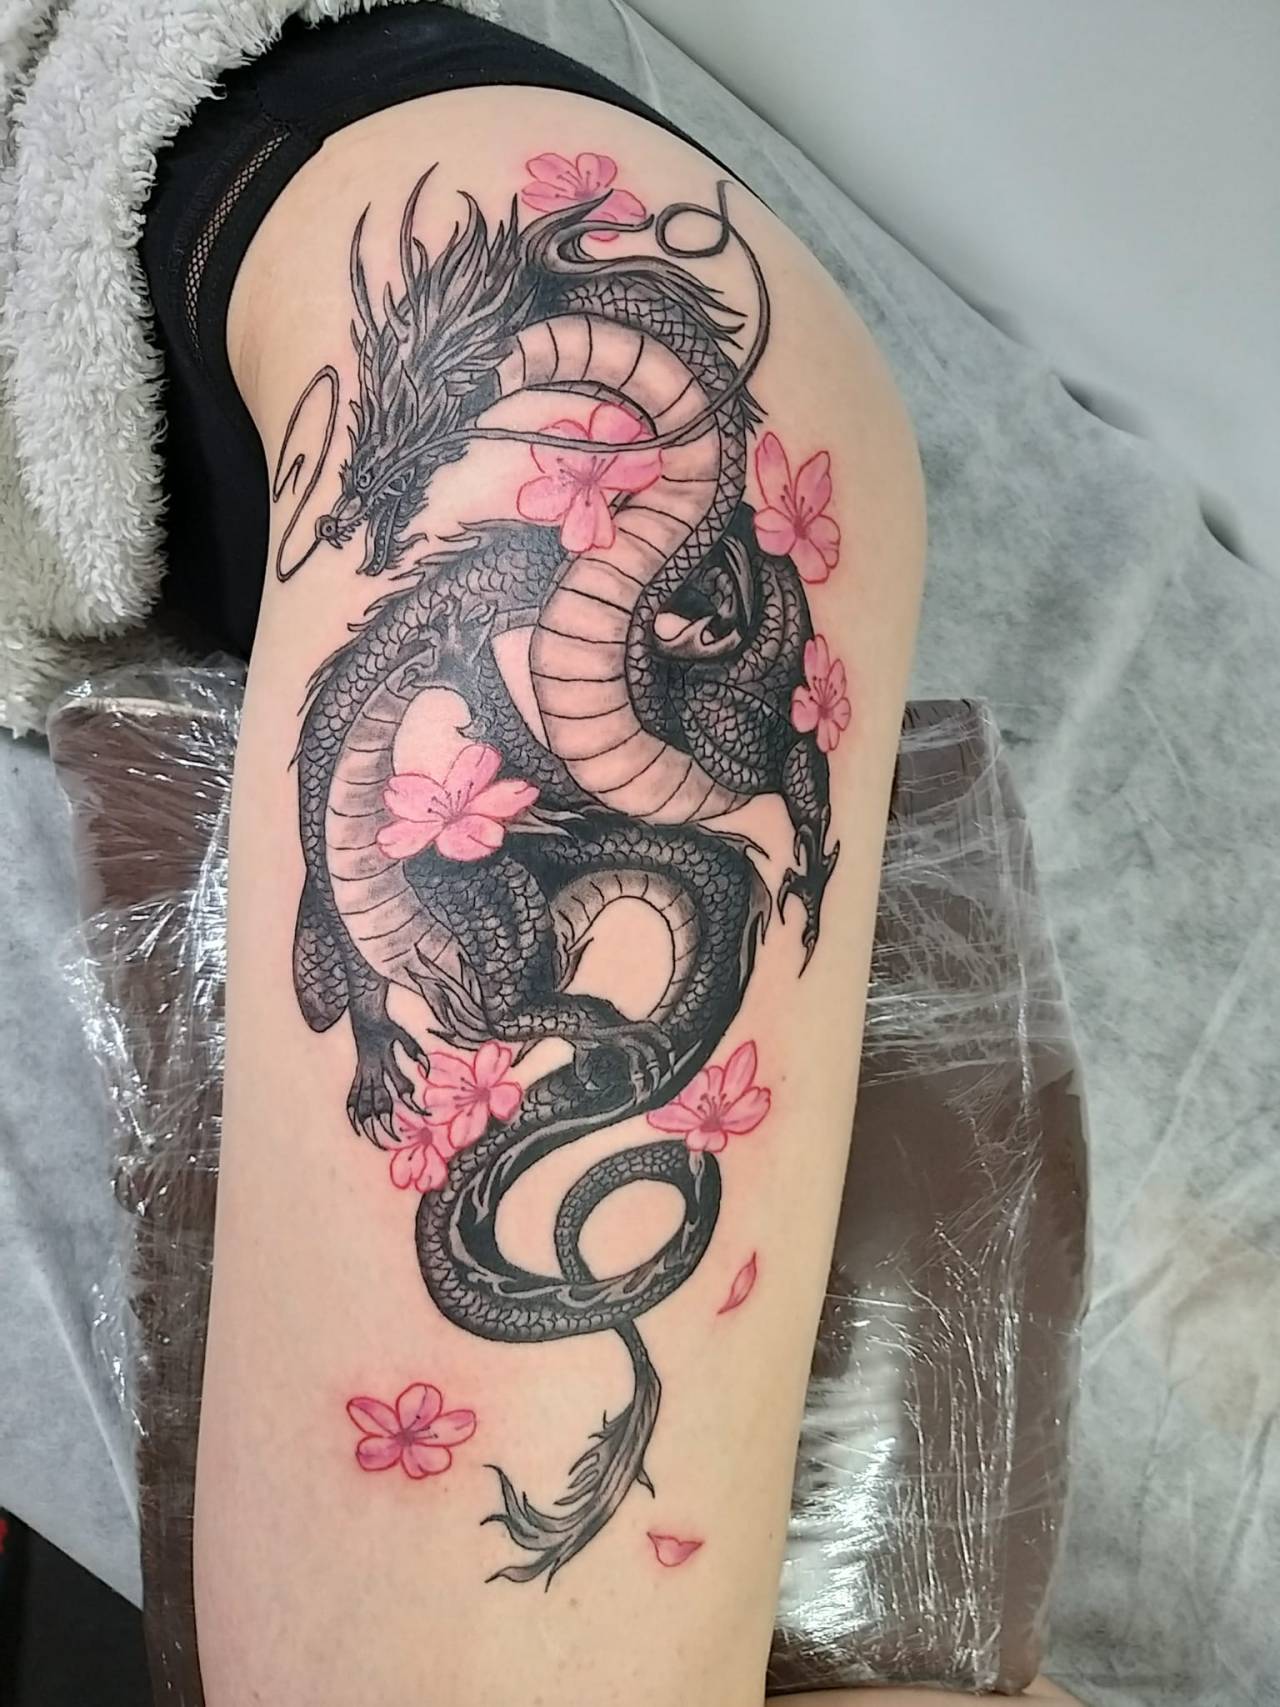 Dragon and cherry blossom art artist artistic tattooarist 9 9dragons  9dragonsin  Dragon tattoo designs Dragon tattoo with flowers Dragon  tattoo for women